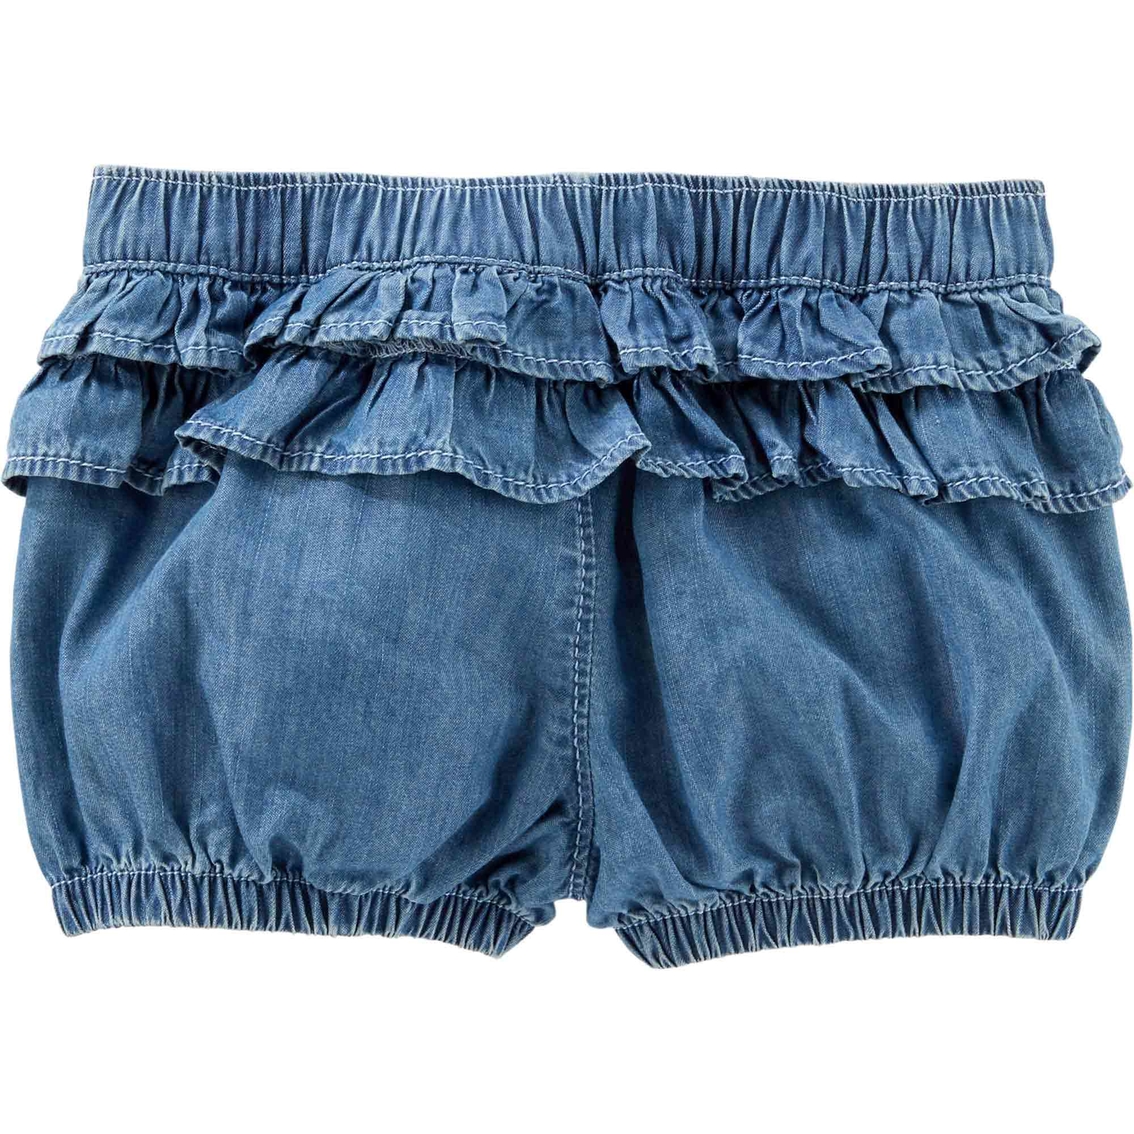 OshKosh B'gosh Infant Girls Ruffle Back Shorts, Dream Wash - Image 2 of 2